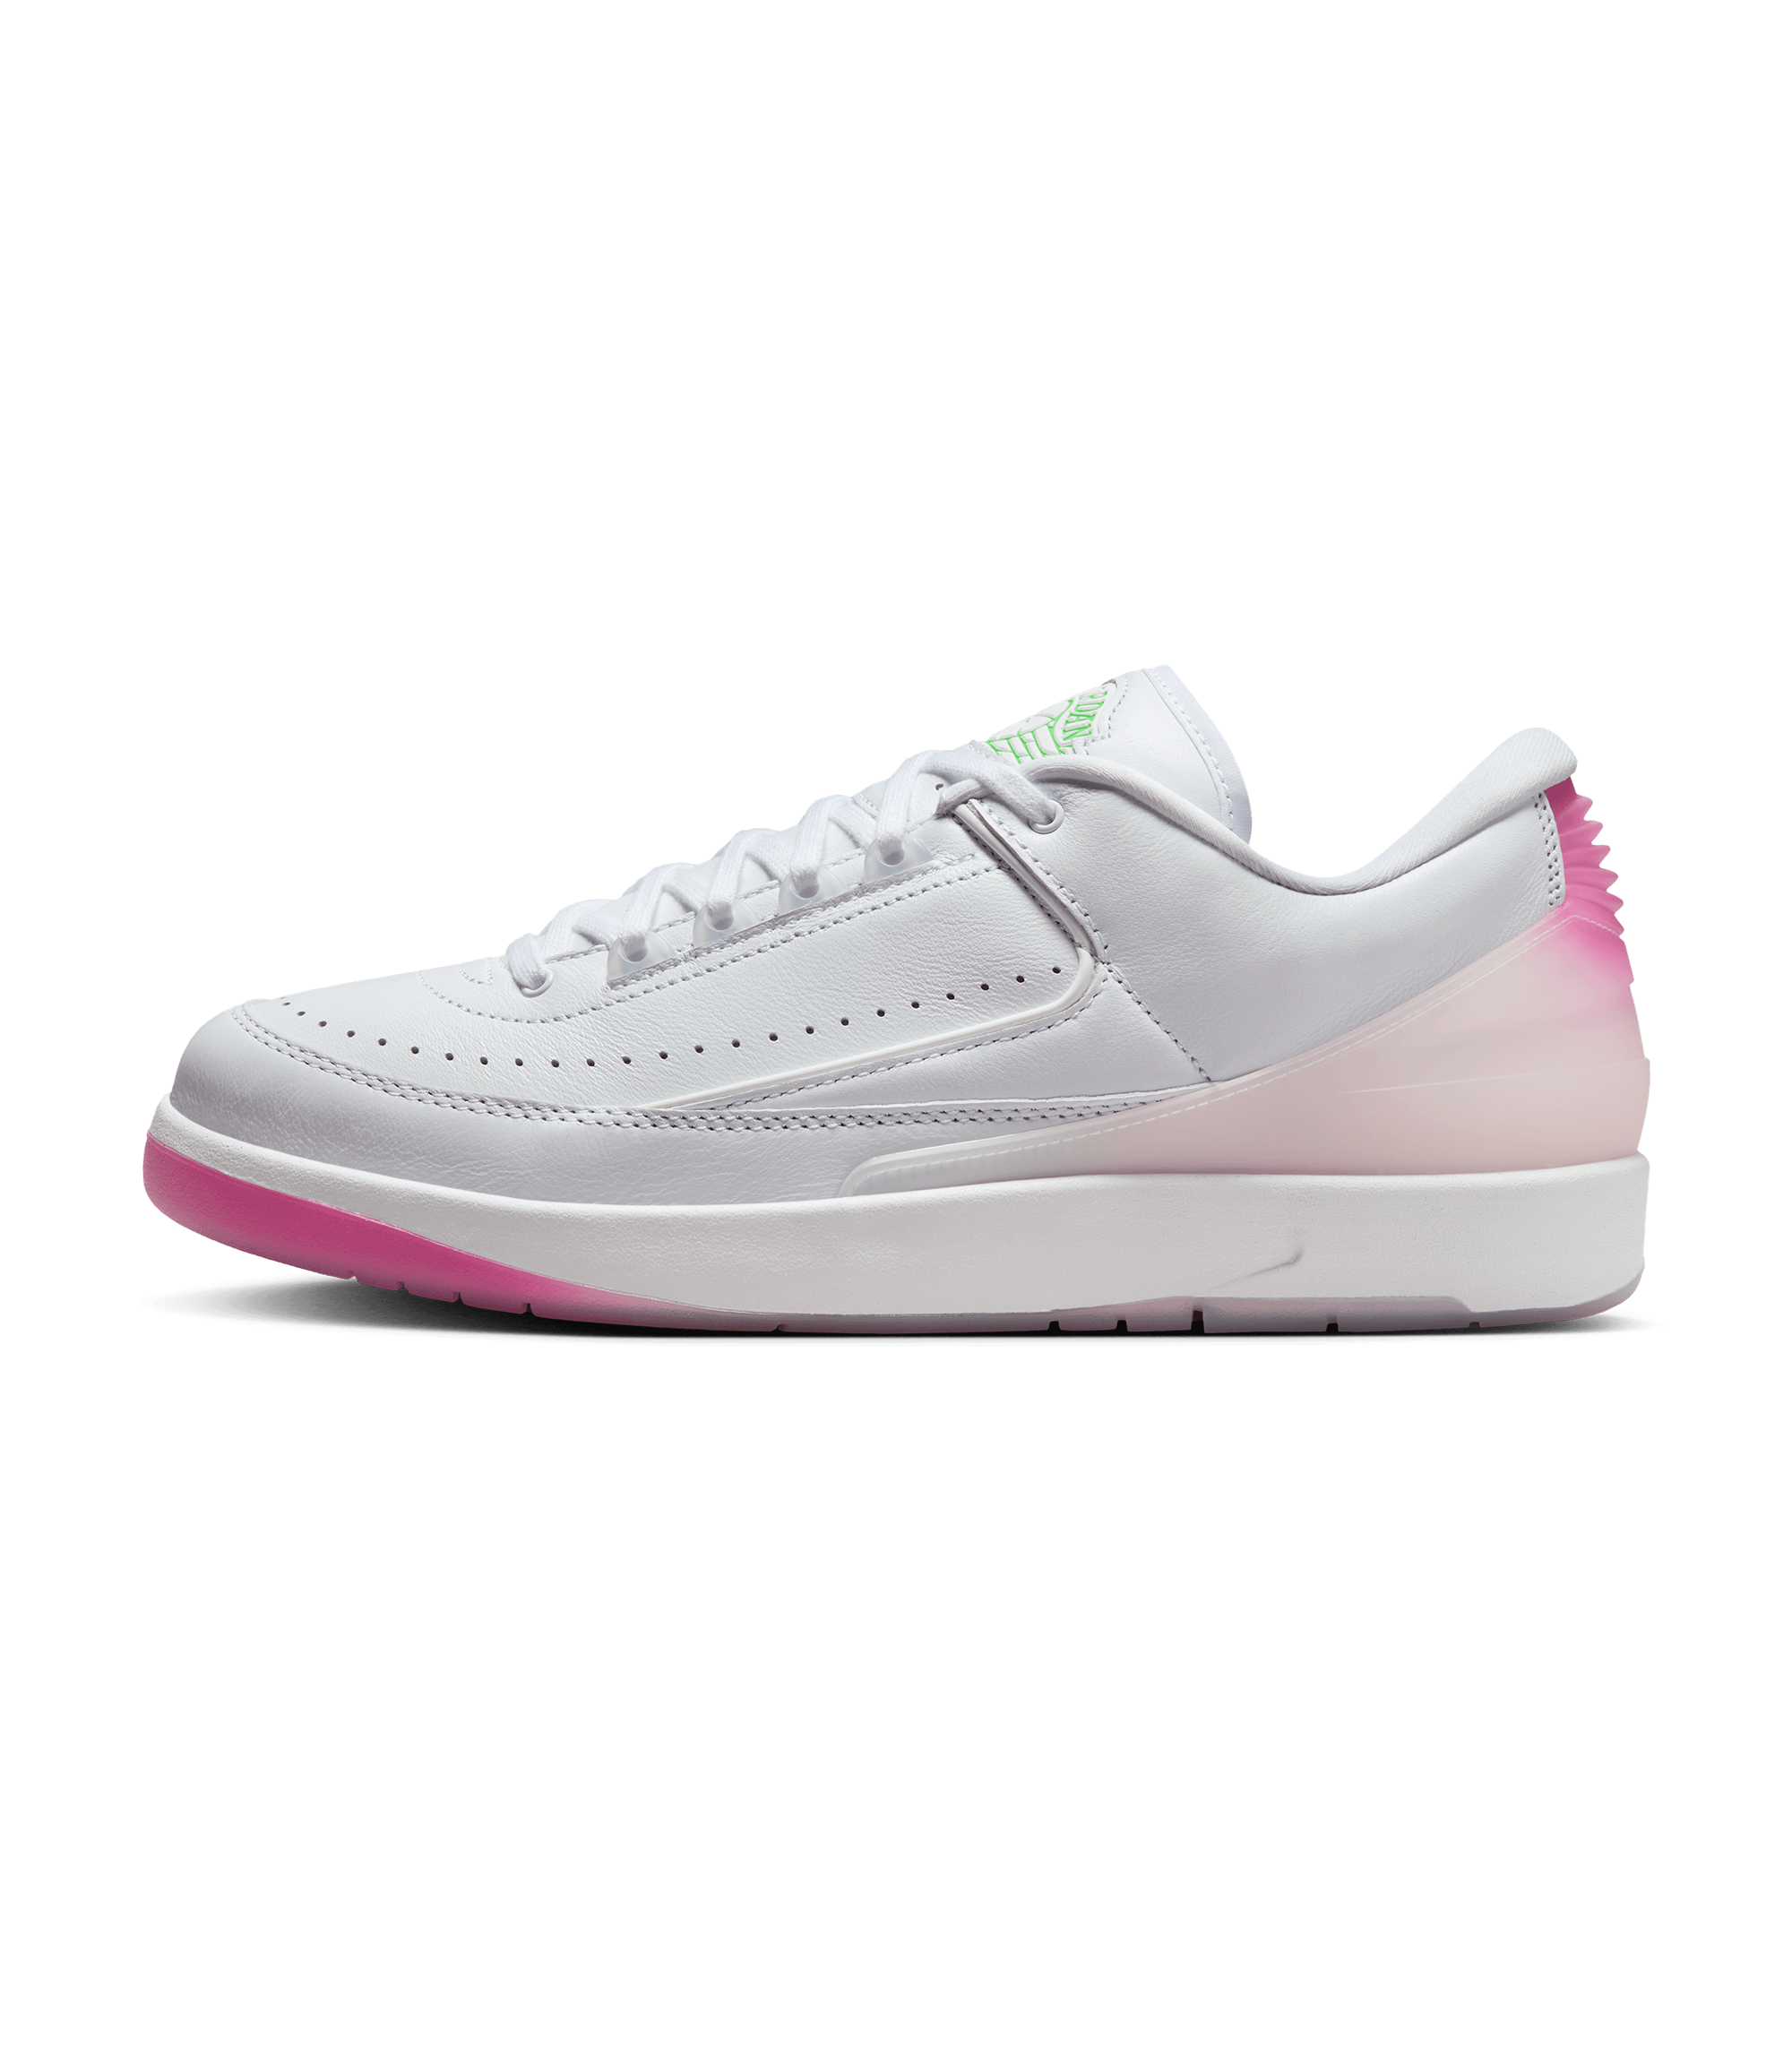 Air Jordan 2 "Sakura" - White / Strike Green / Playful Pink